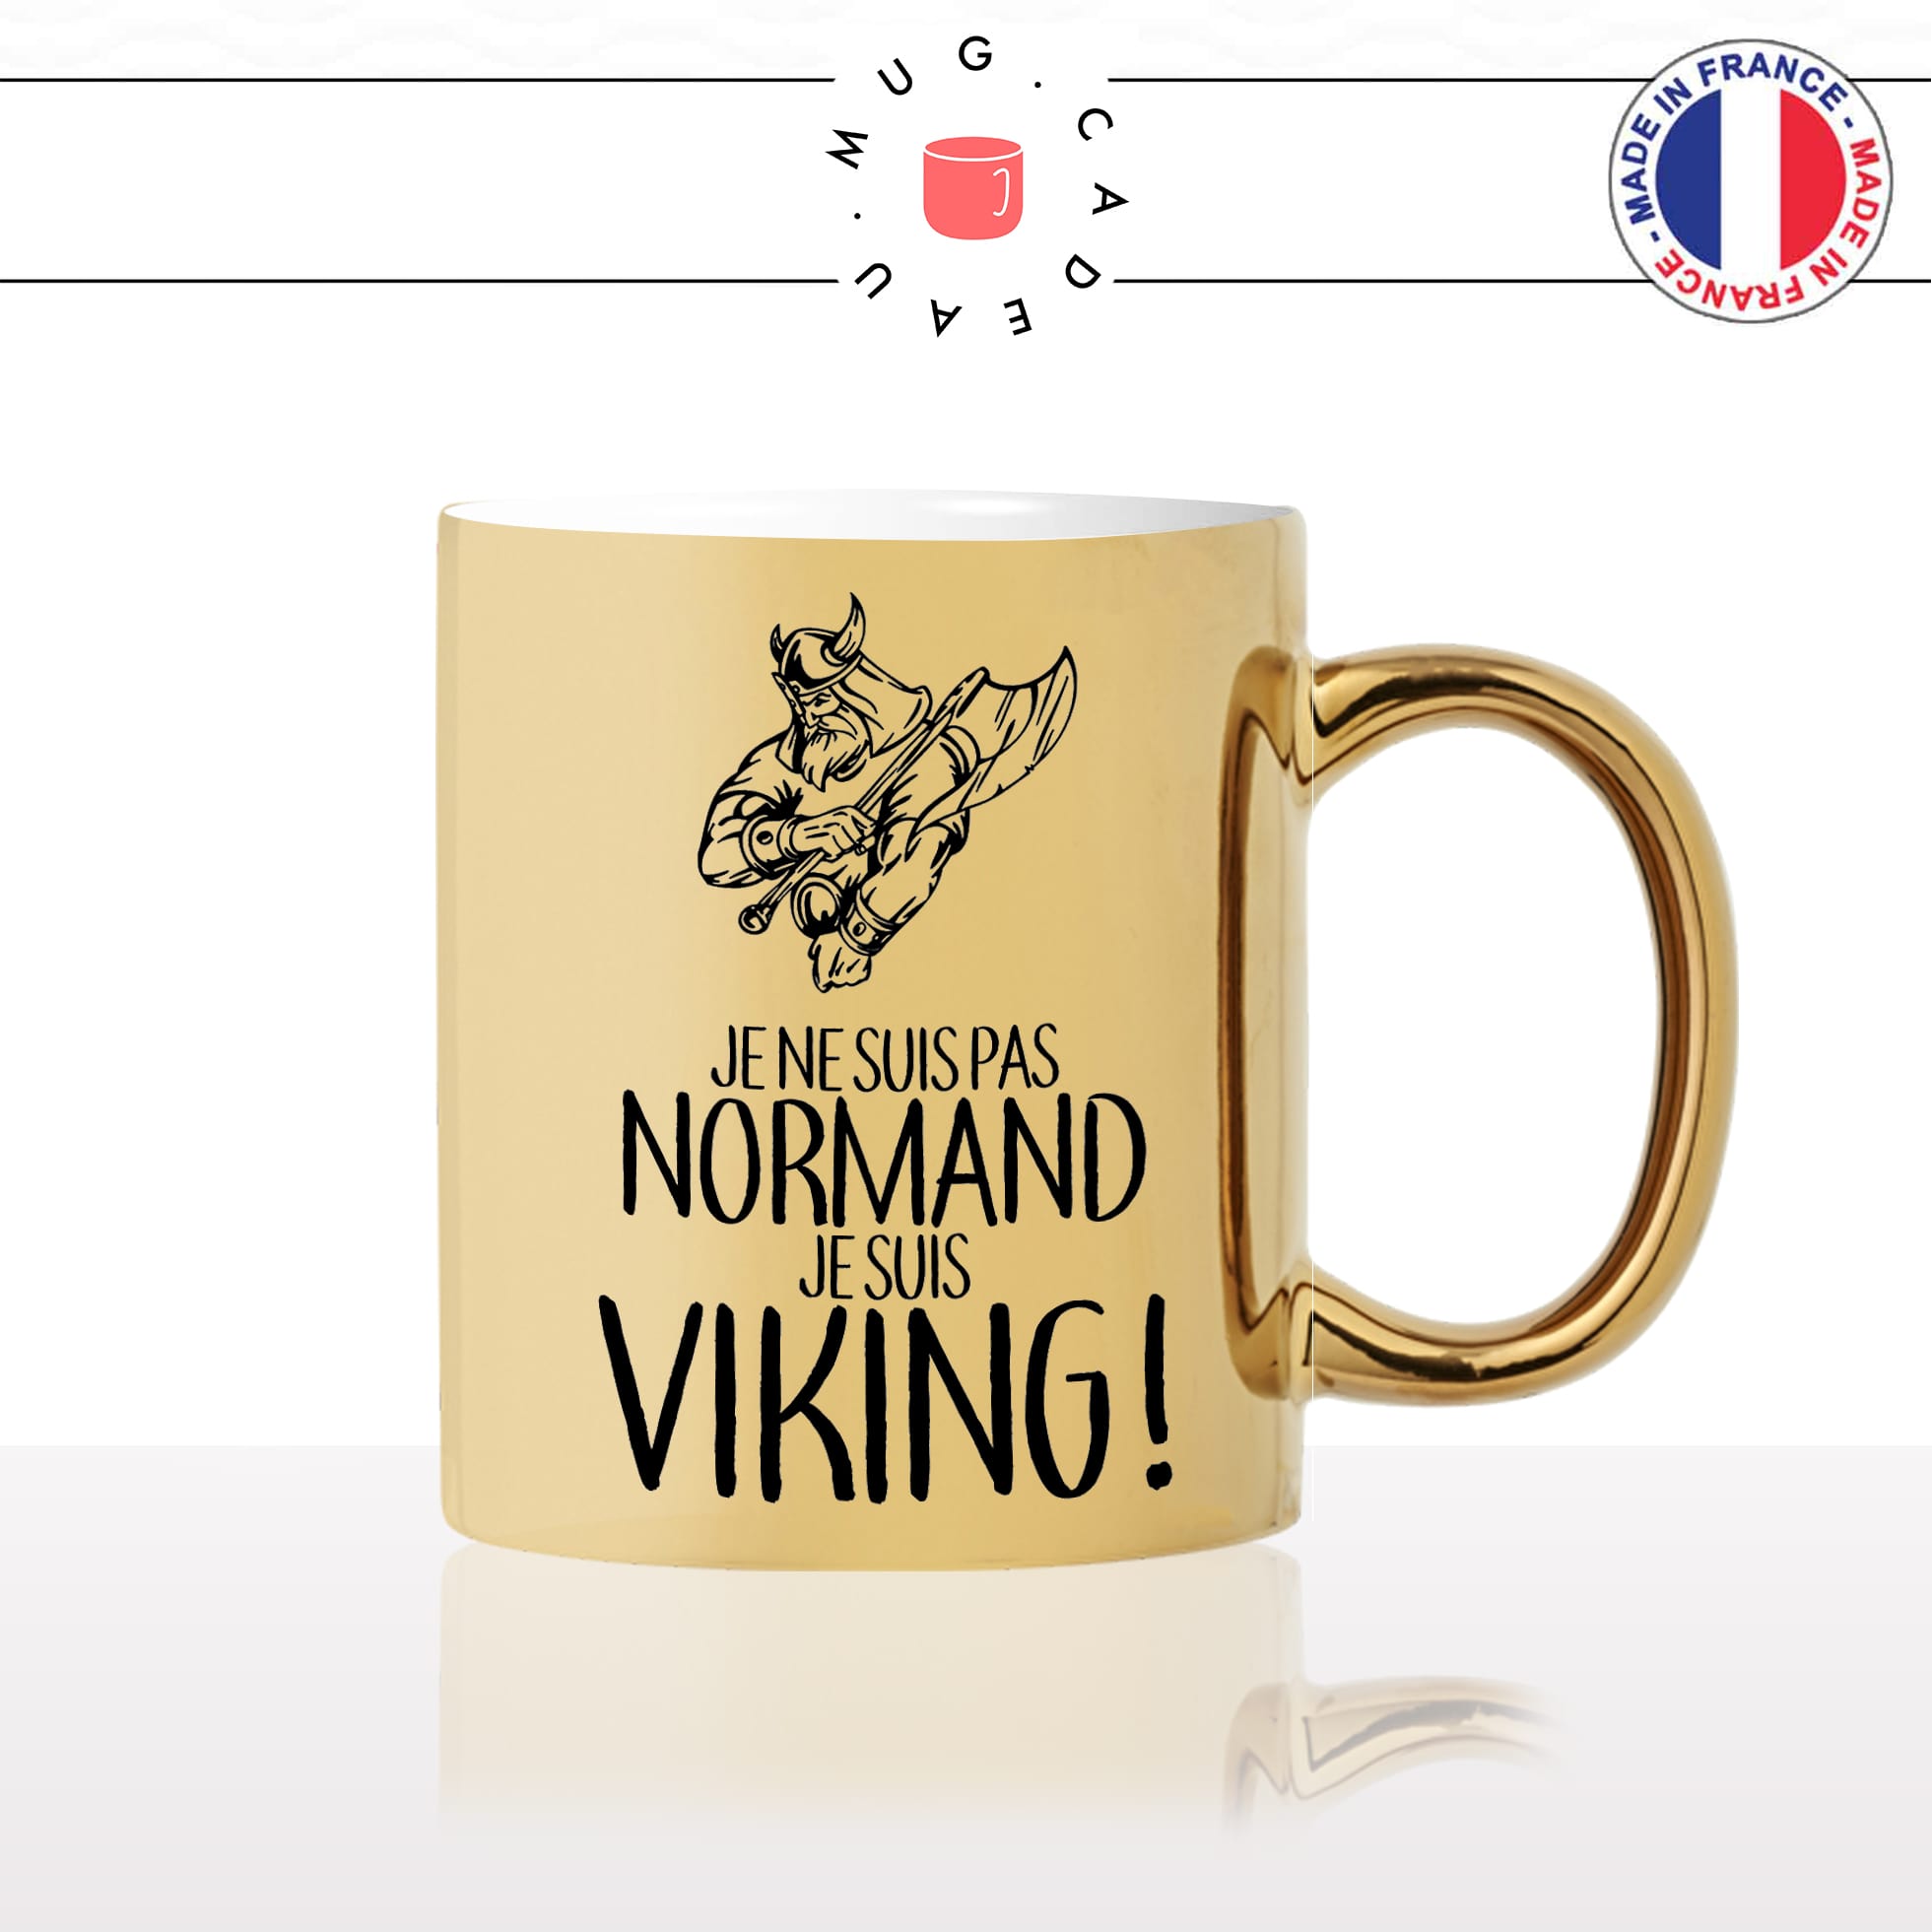 mug-tasse-or-gold-doré-je-suis-pas-normand-je-suis-viking-normandie-série-nord-france-suede-fun-idée-cadeau-original-personnalisé-café-thé2-min